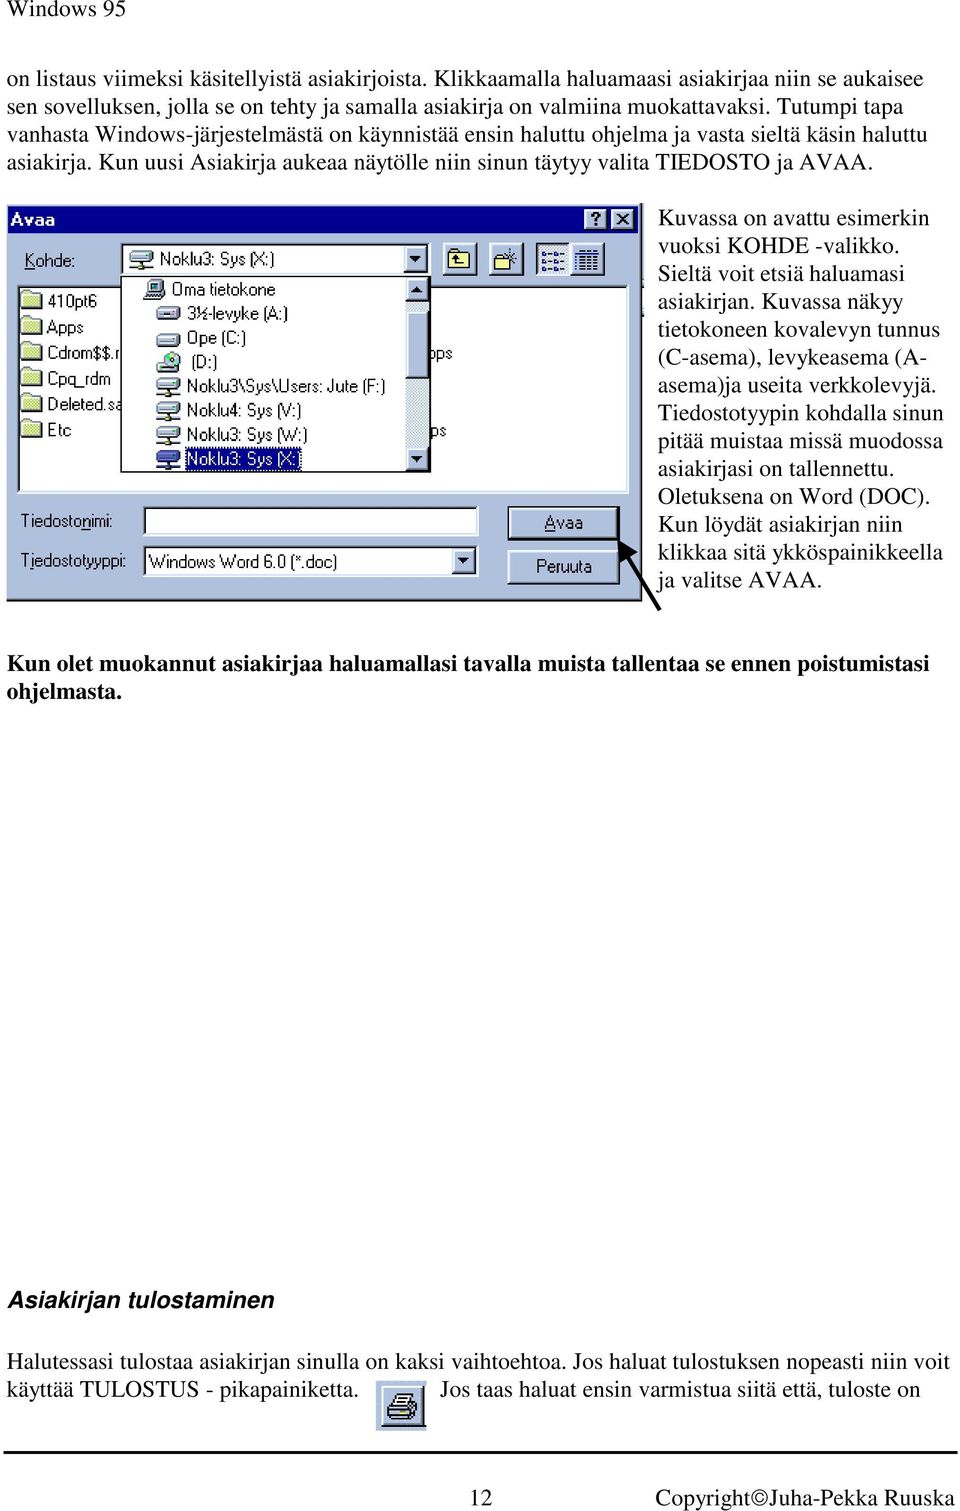 Kuvassa on avattu esimerkin vuoksi KOHDE -valikko. Sieltä voit etsiä haluamasi asiakirjan. Kuvassa näkyy tietokoneen kovalevyn tunnus (C-asema), levykeasema (Aasema)ja useita verkkolevyjä.